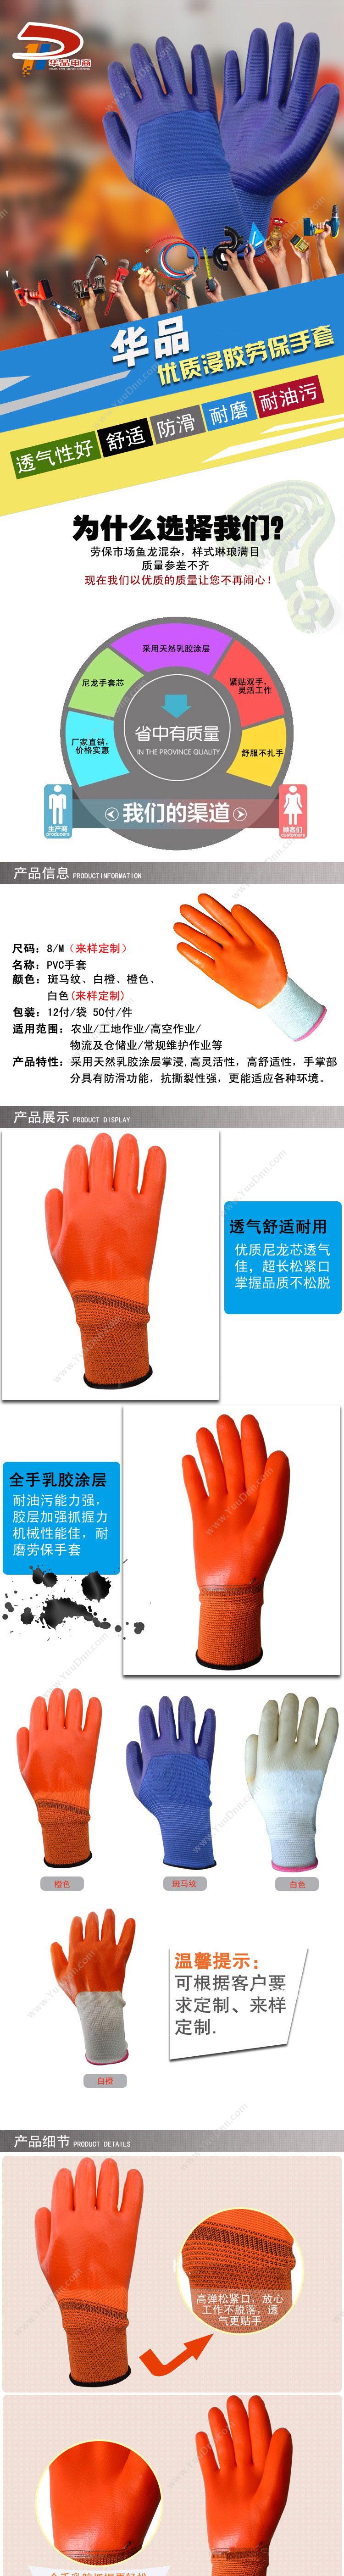 华品 HPP-201 通用手套